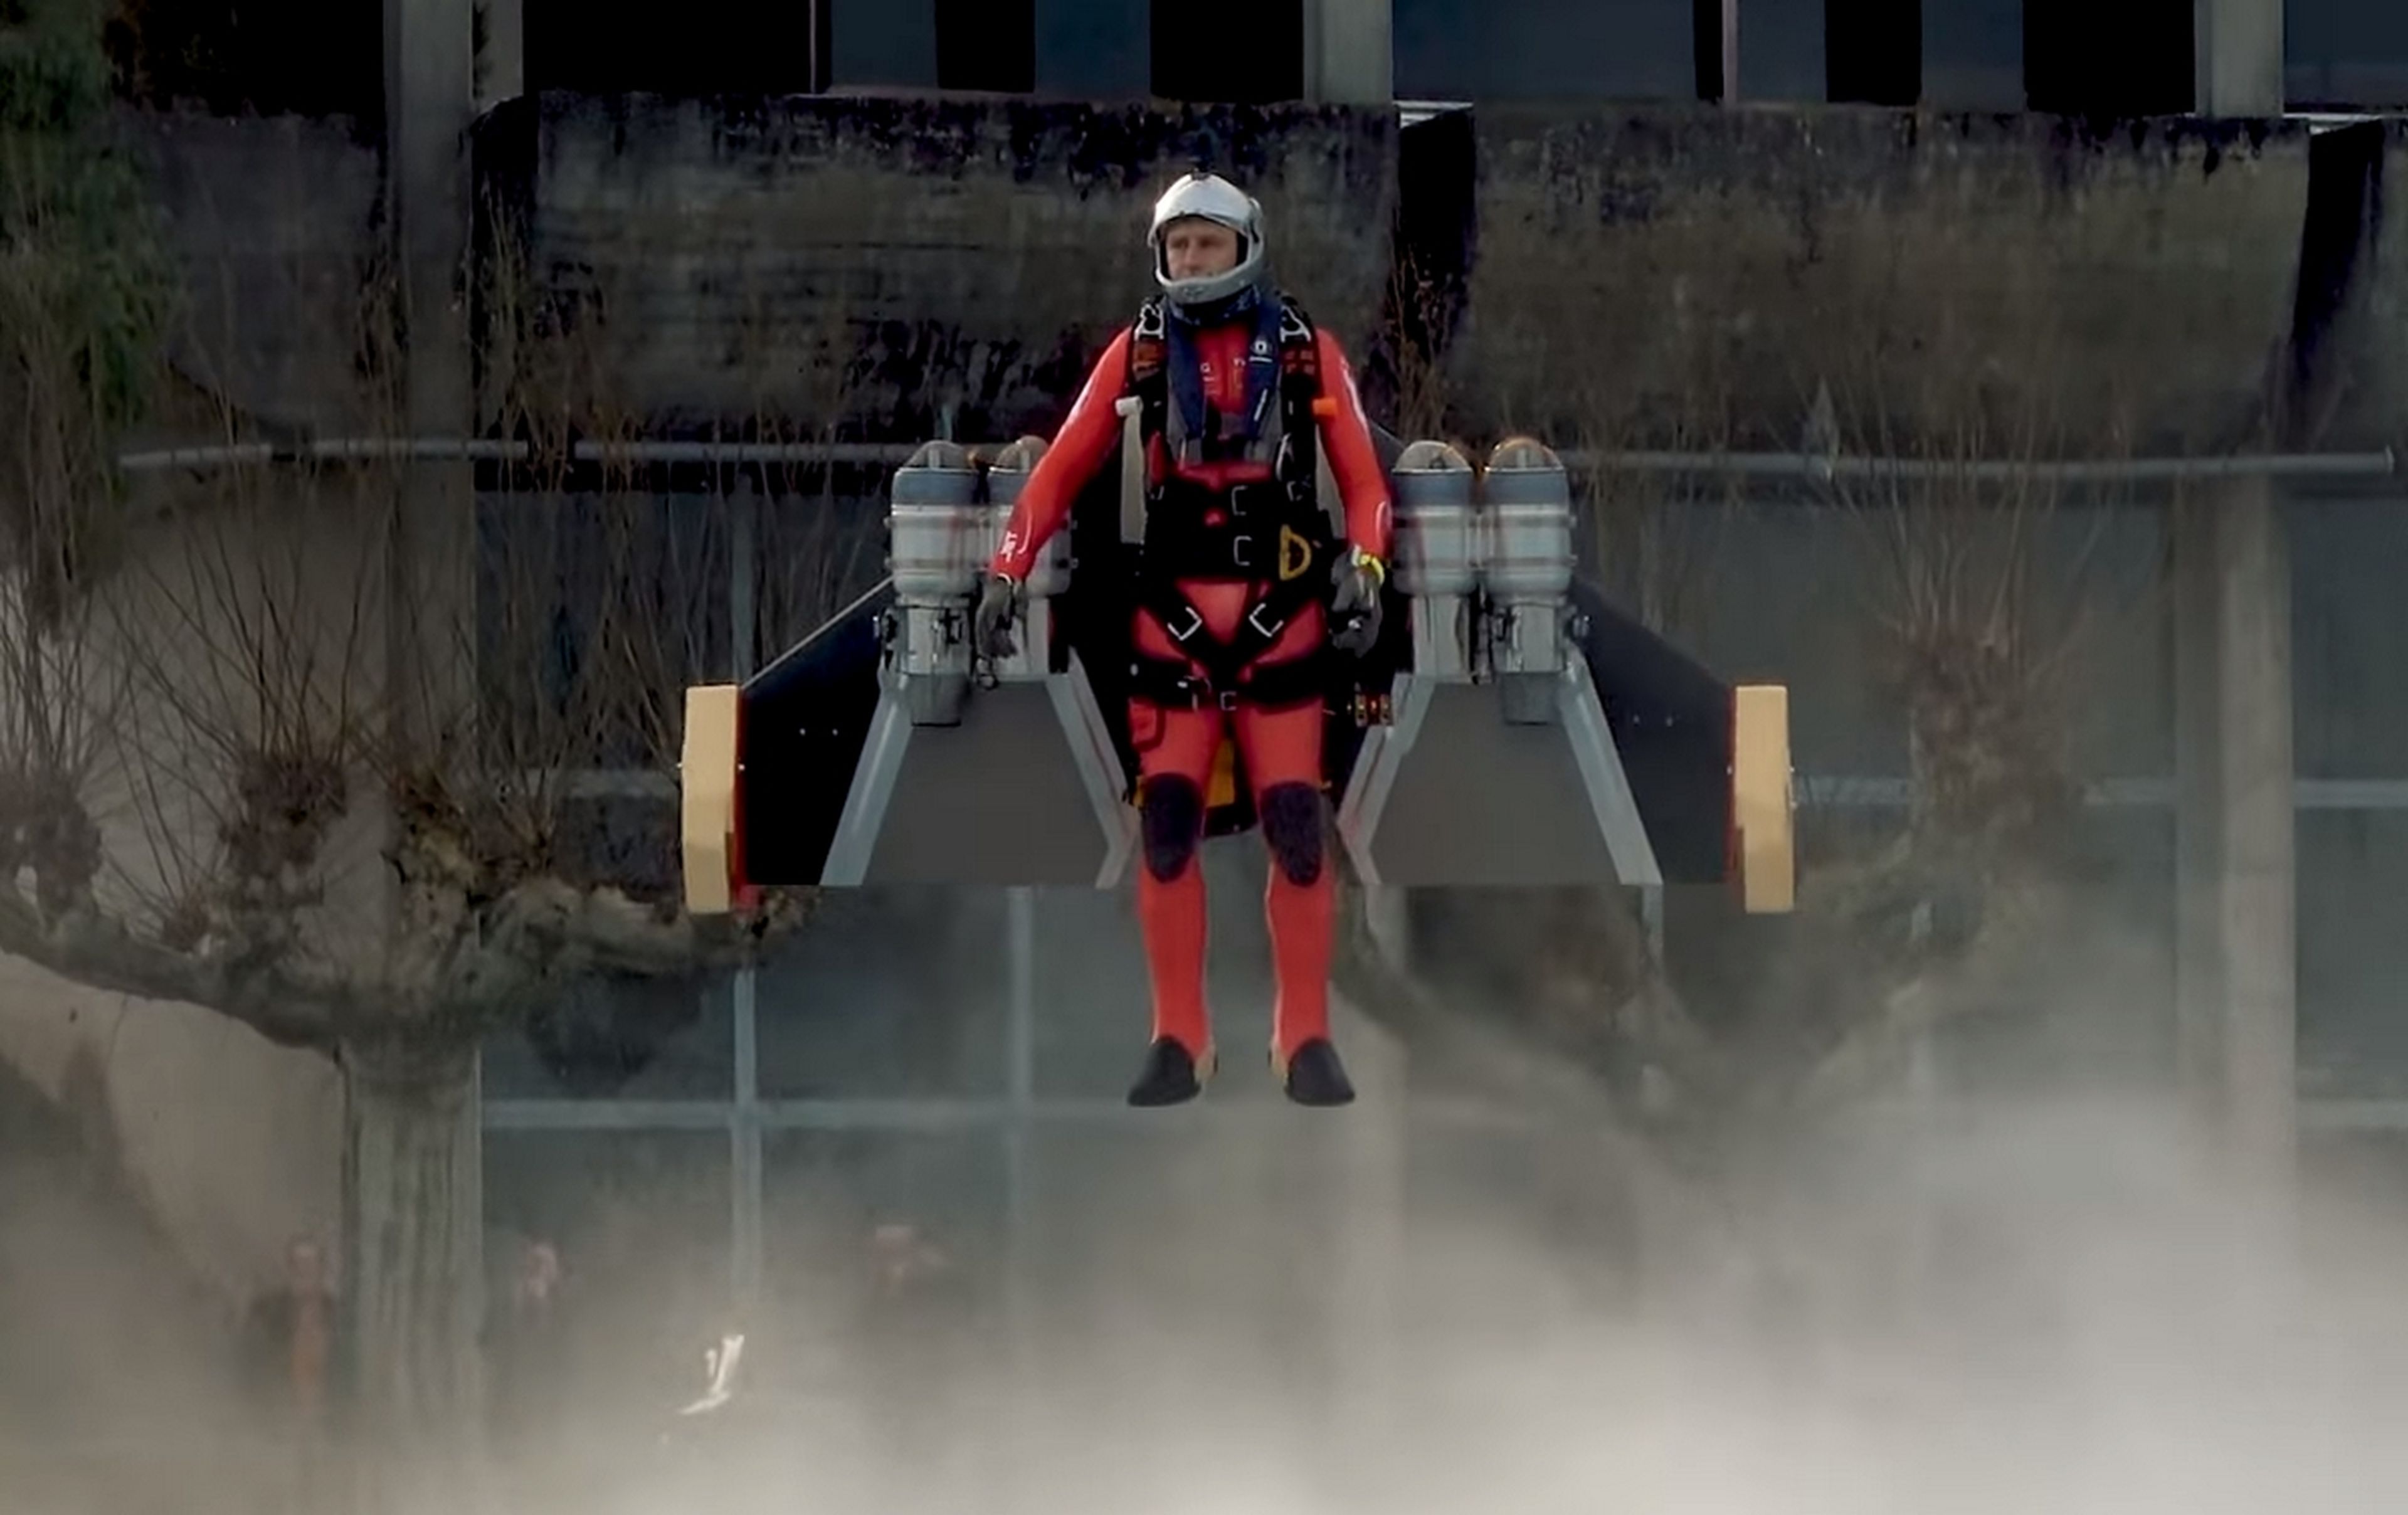 Vuelve Jetman, el hombre volador, y ahora puede despegar desde el suelo y ascender a 4.000 metros de altura